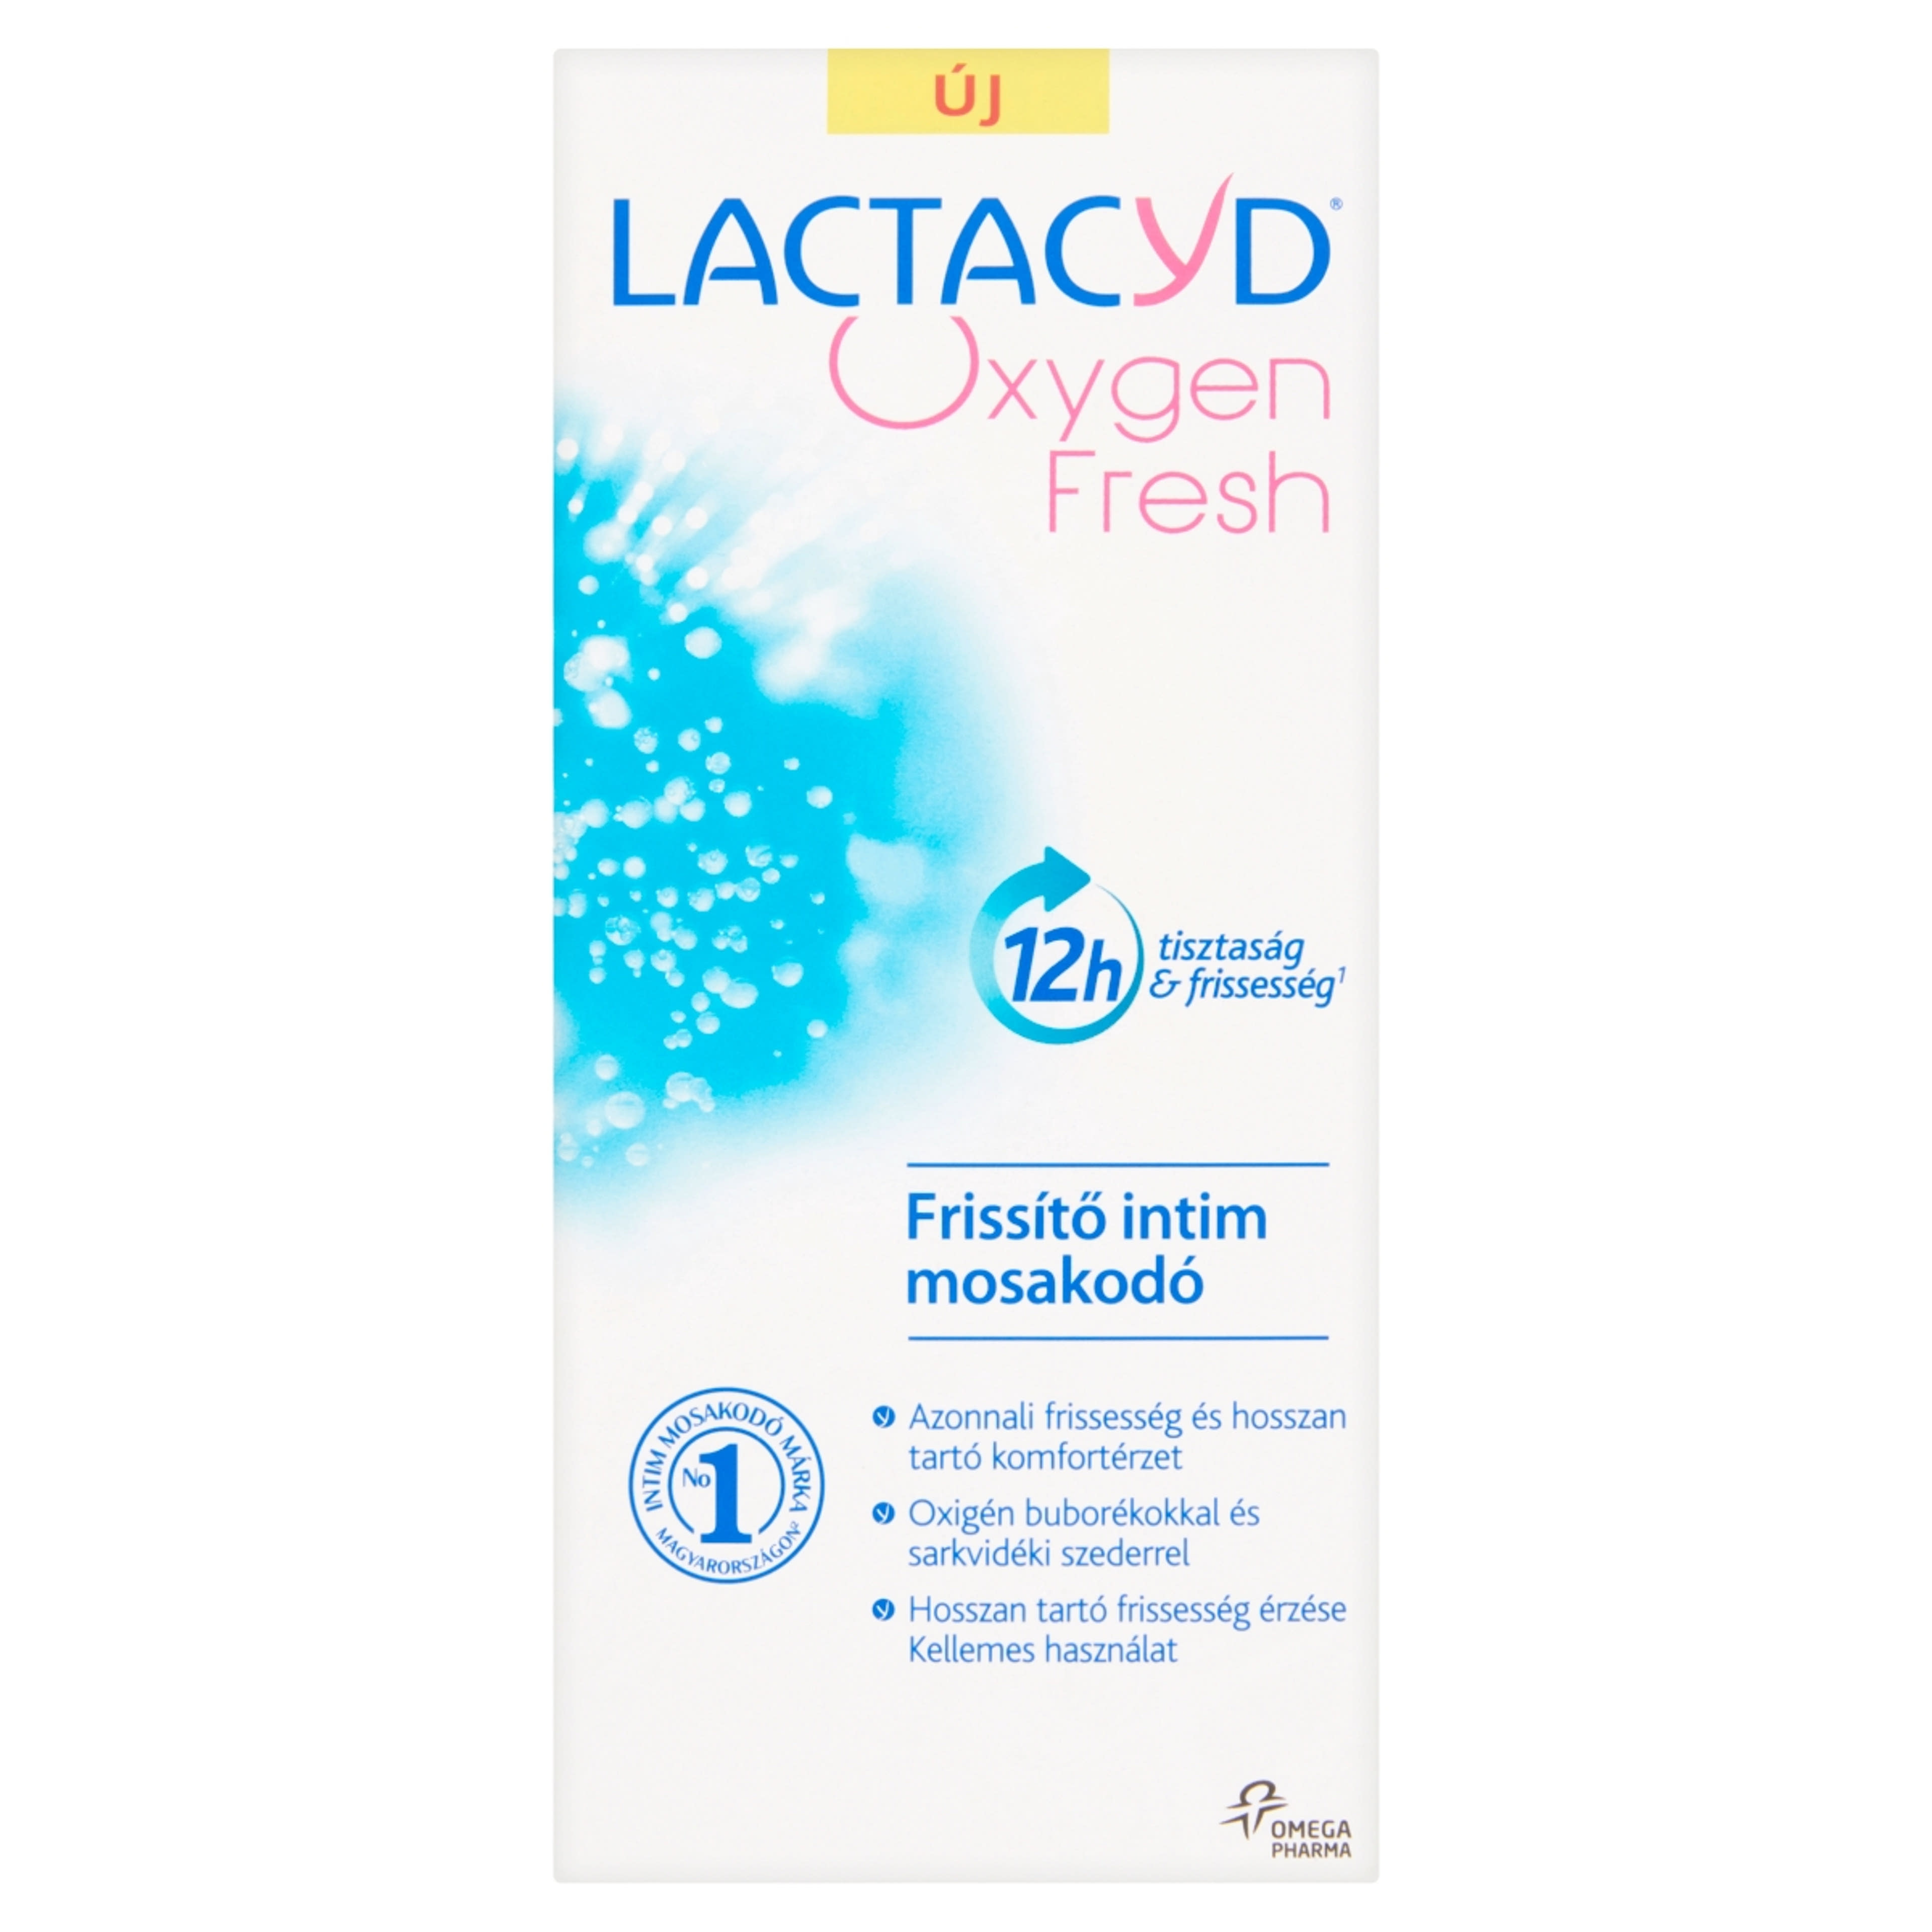 Lactacyd Oxygen Fresh intim mosakodó - 200 ml